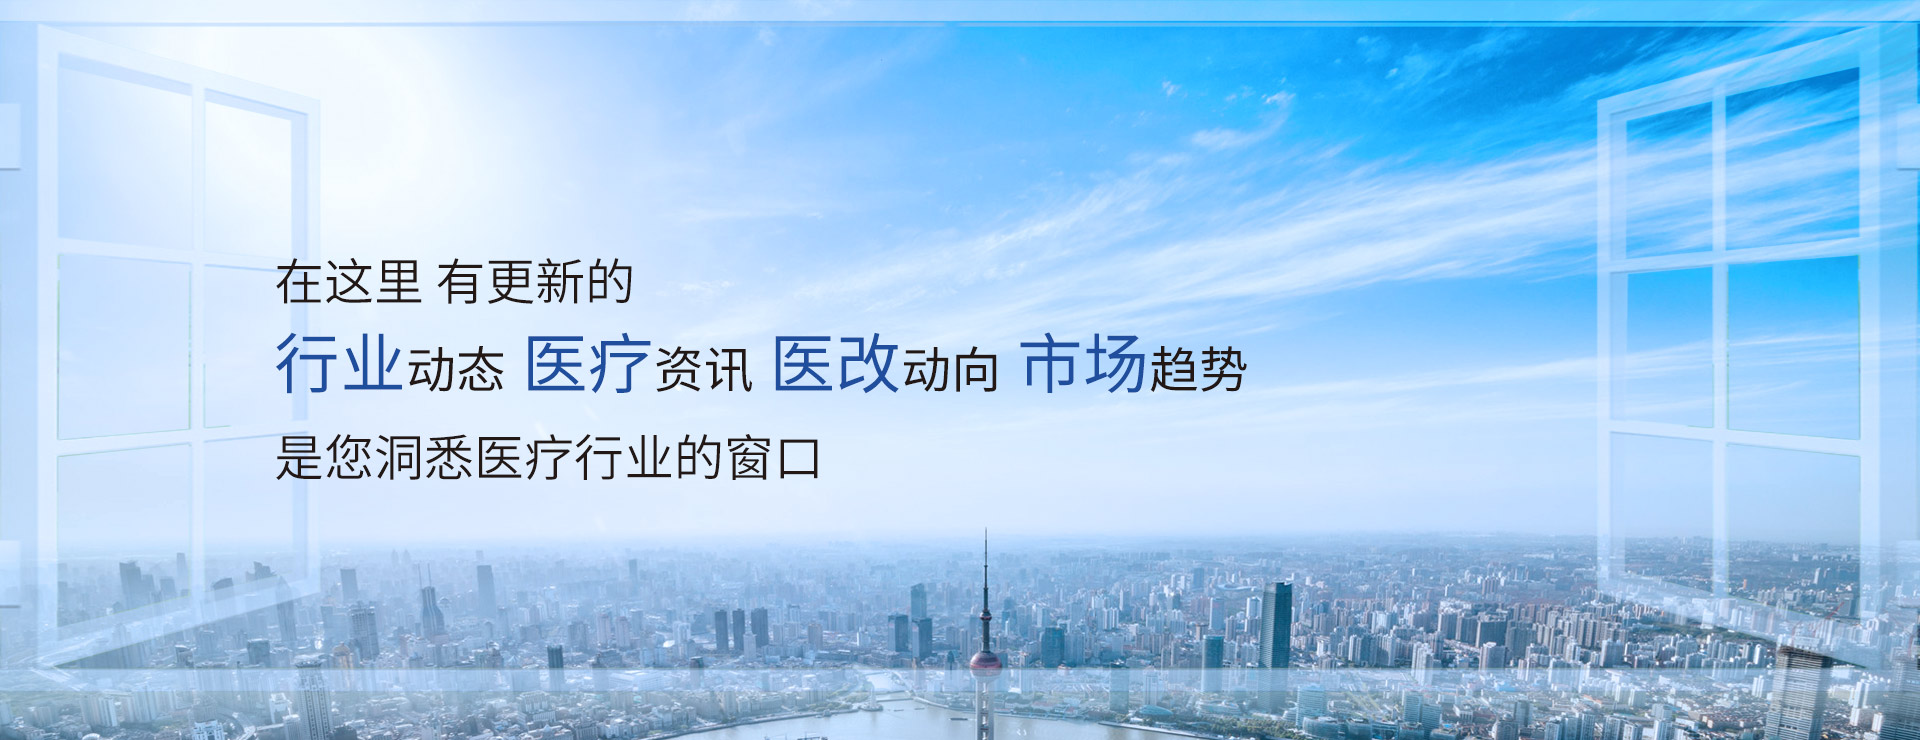 热烈庆祝北京诚济制药入选“北京市市级企业技术中心创建名单”